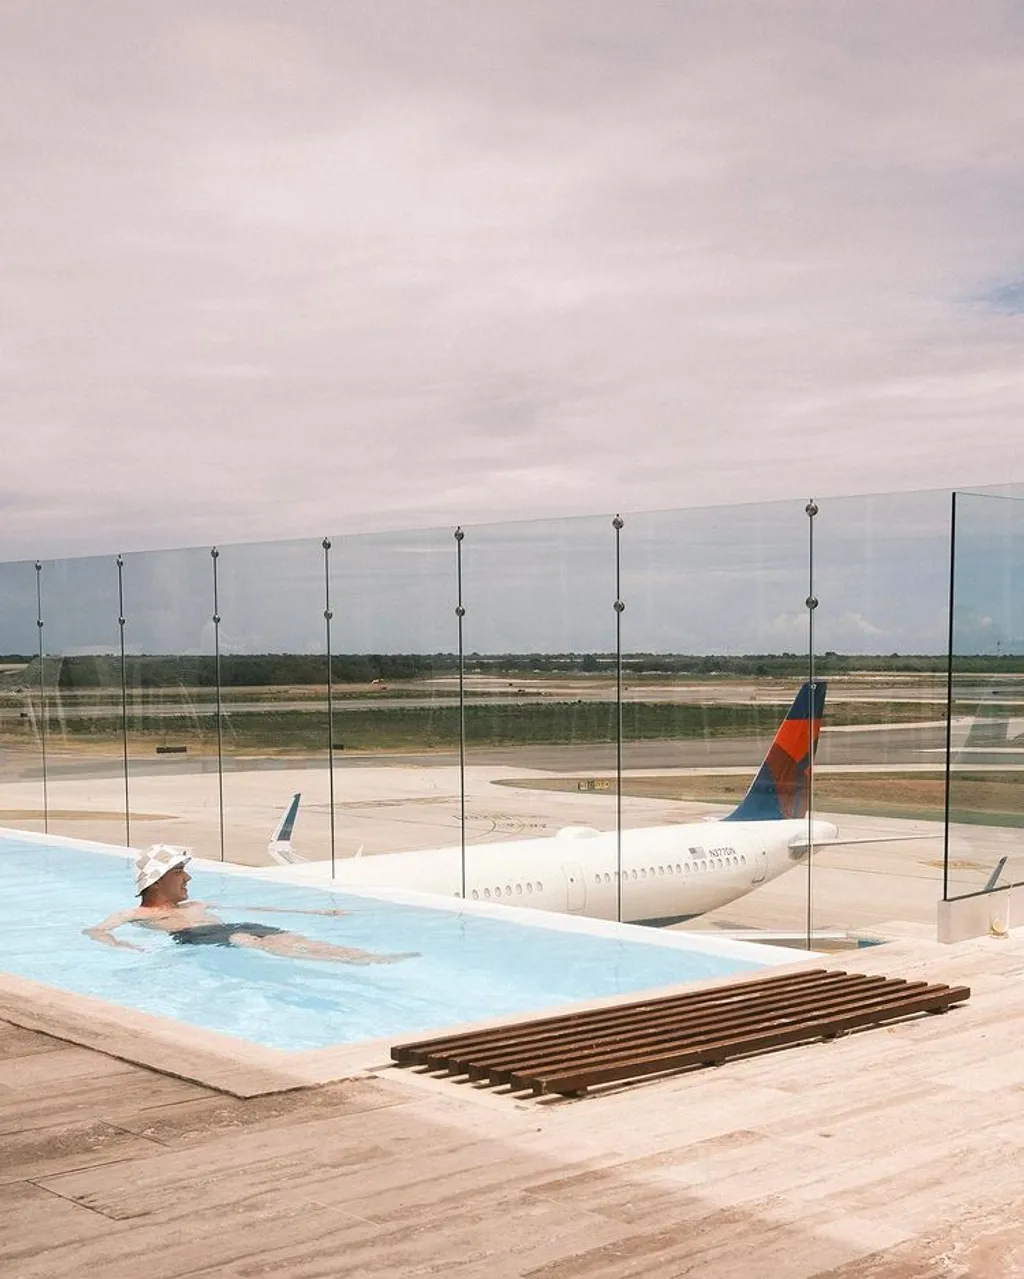 Punta Cana repülőtér medence 